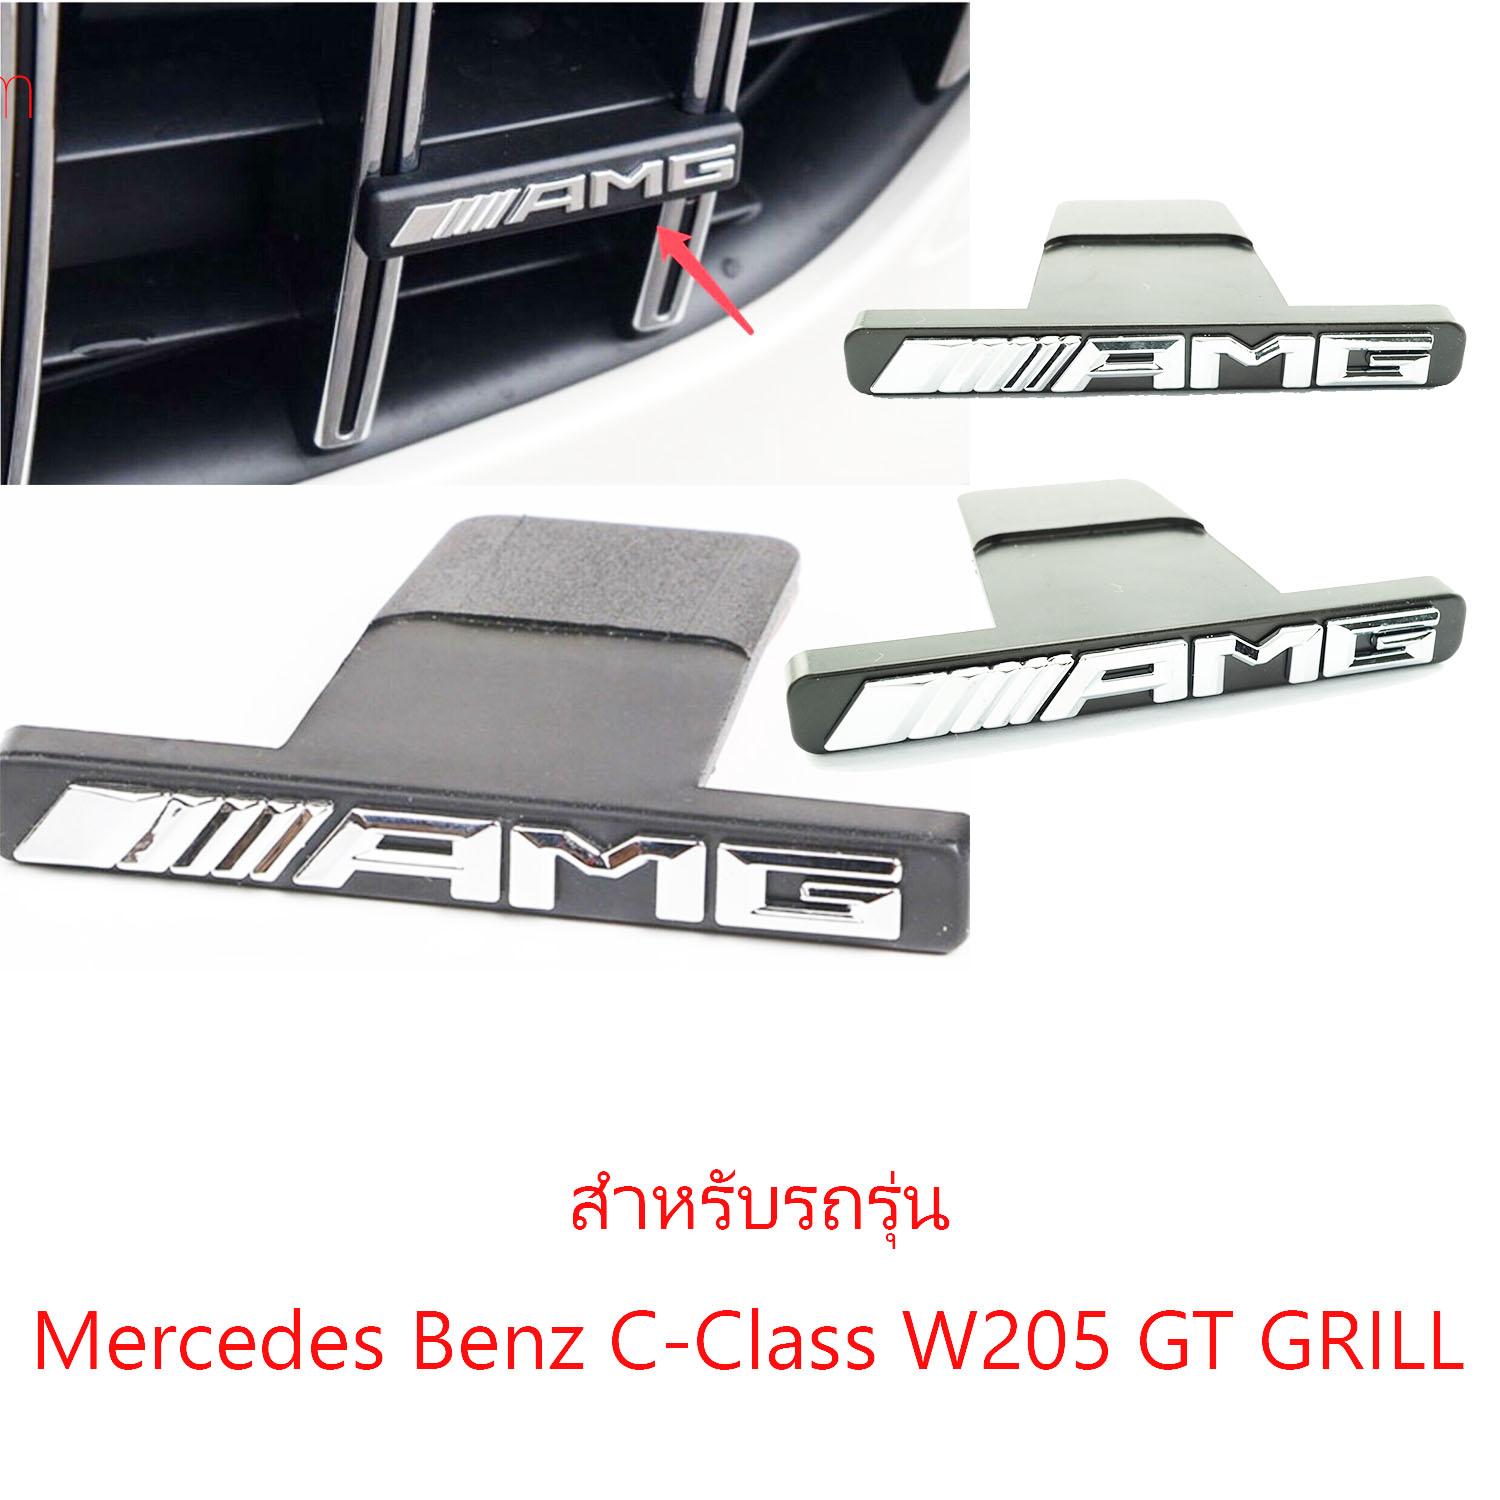 ป้ายโลโก้พลาสติกสีโครเมี่ยม AMG ติดกระจังสำหรับ Benz C-class W205 GT Grille